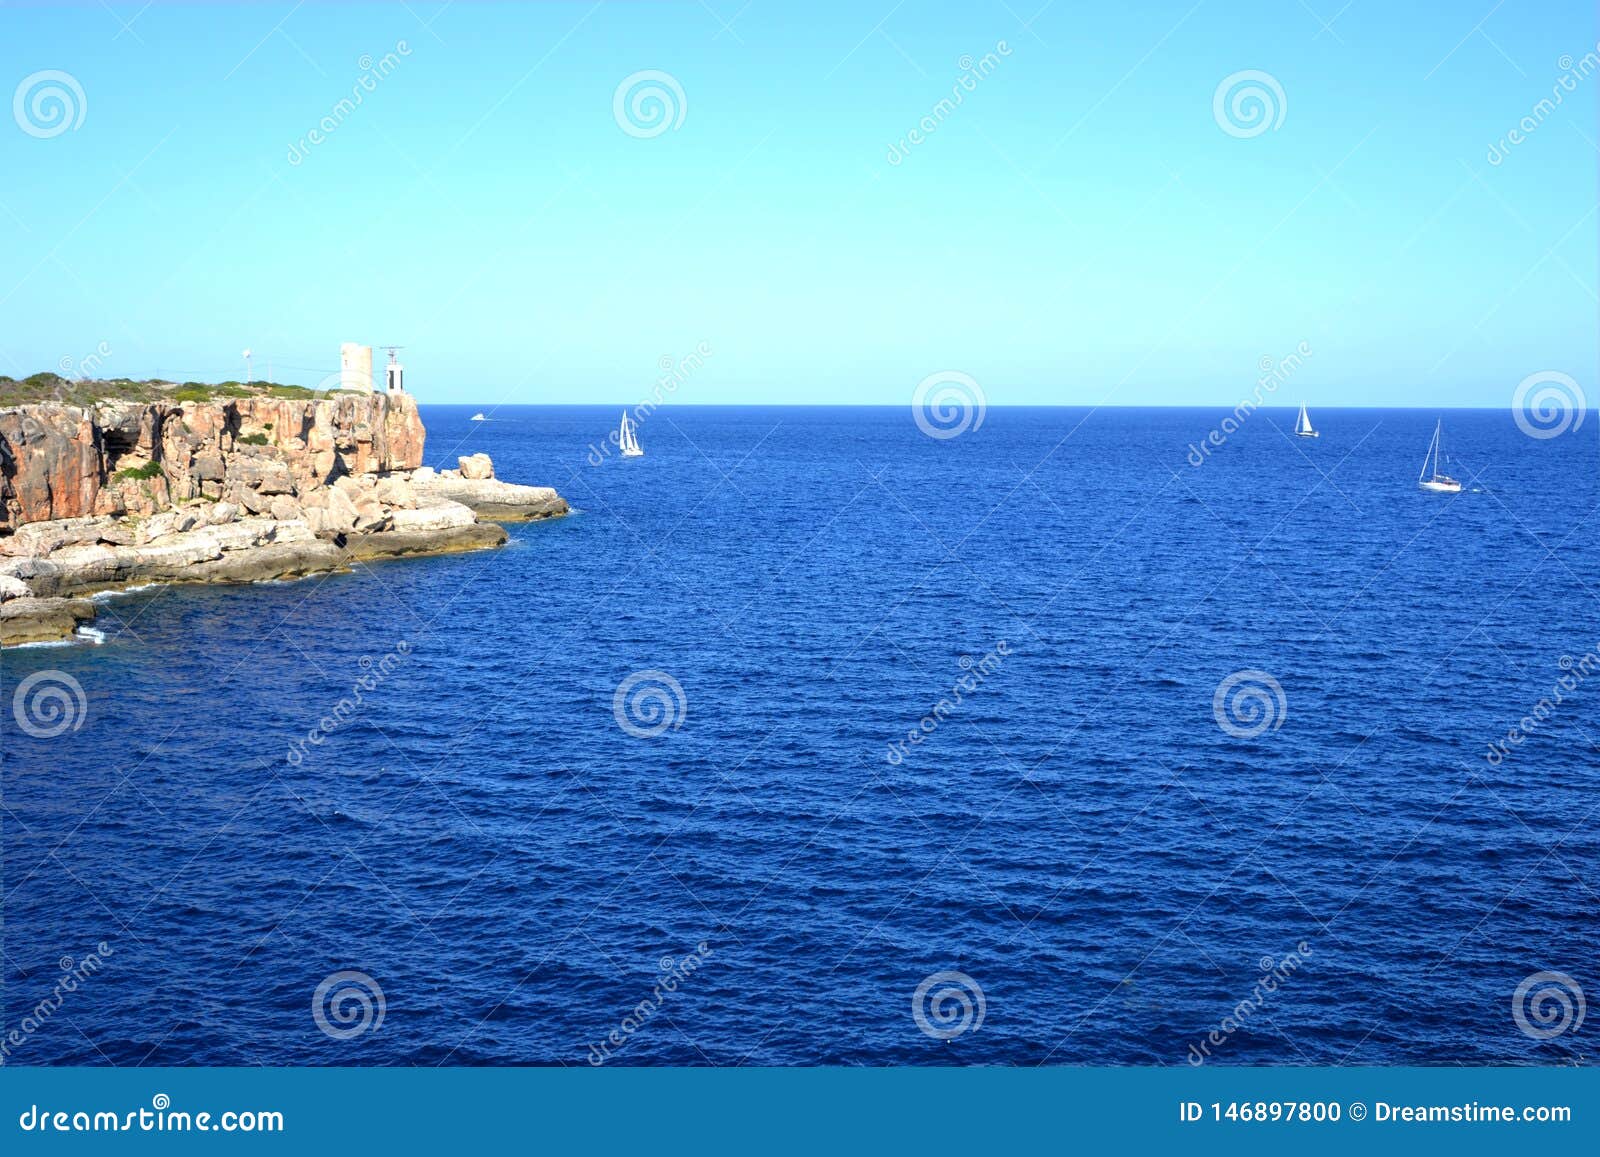 sailing ships at the mediterranean sea